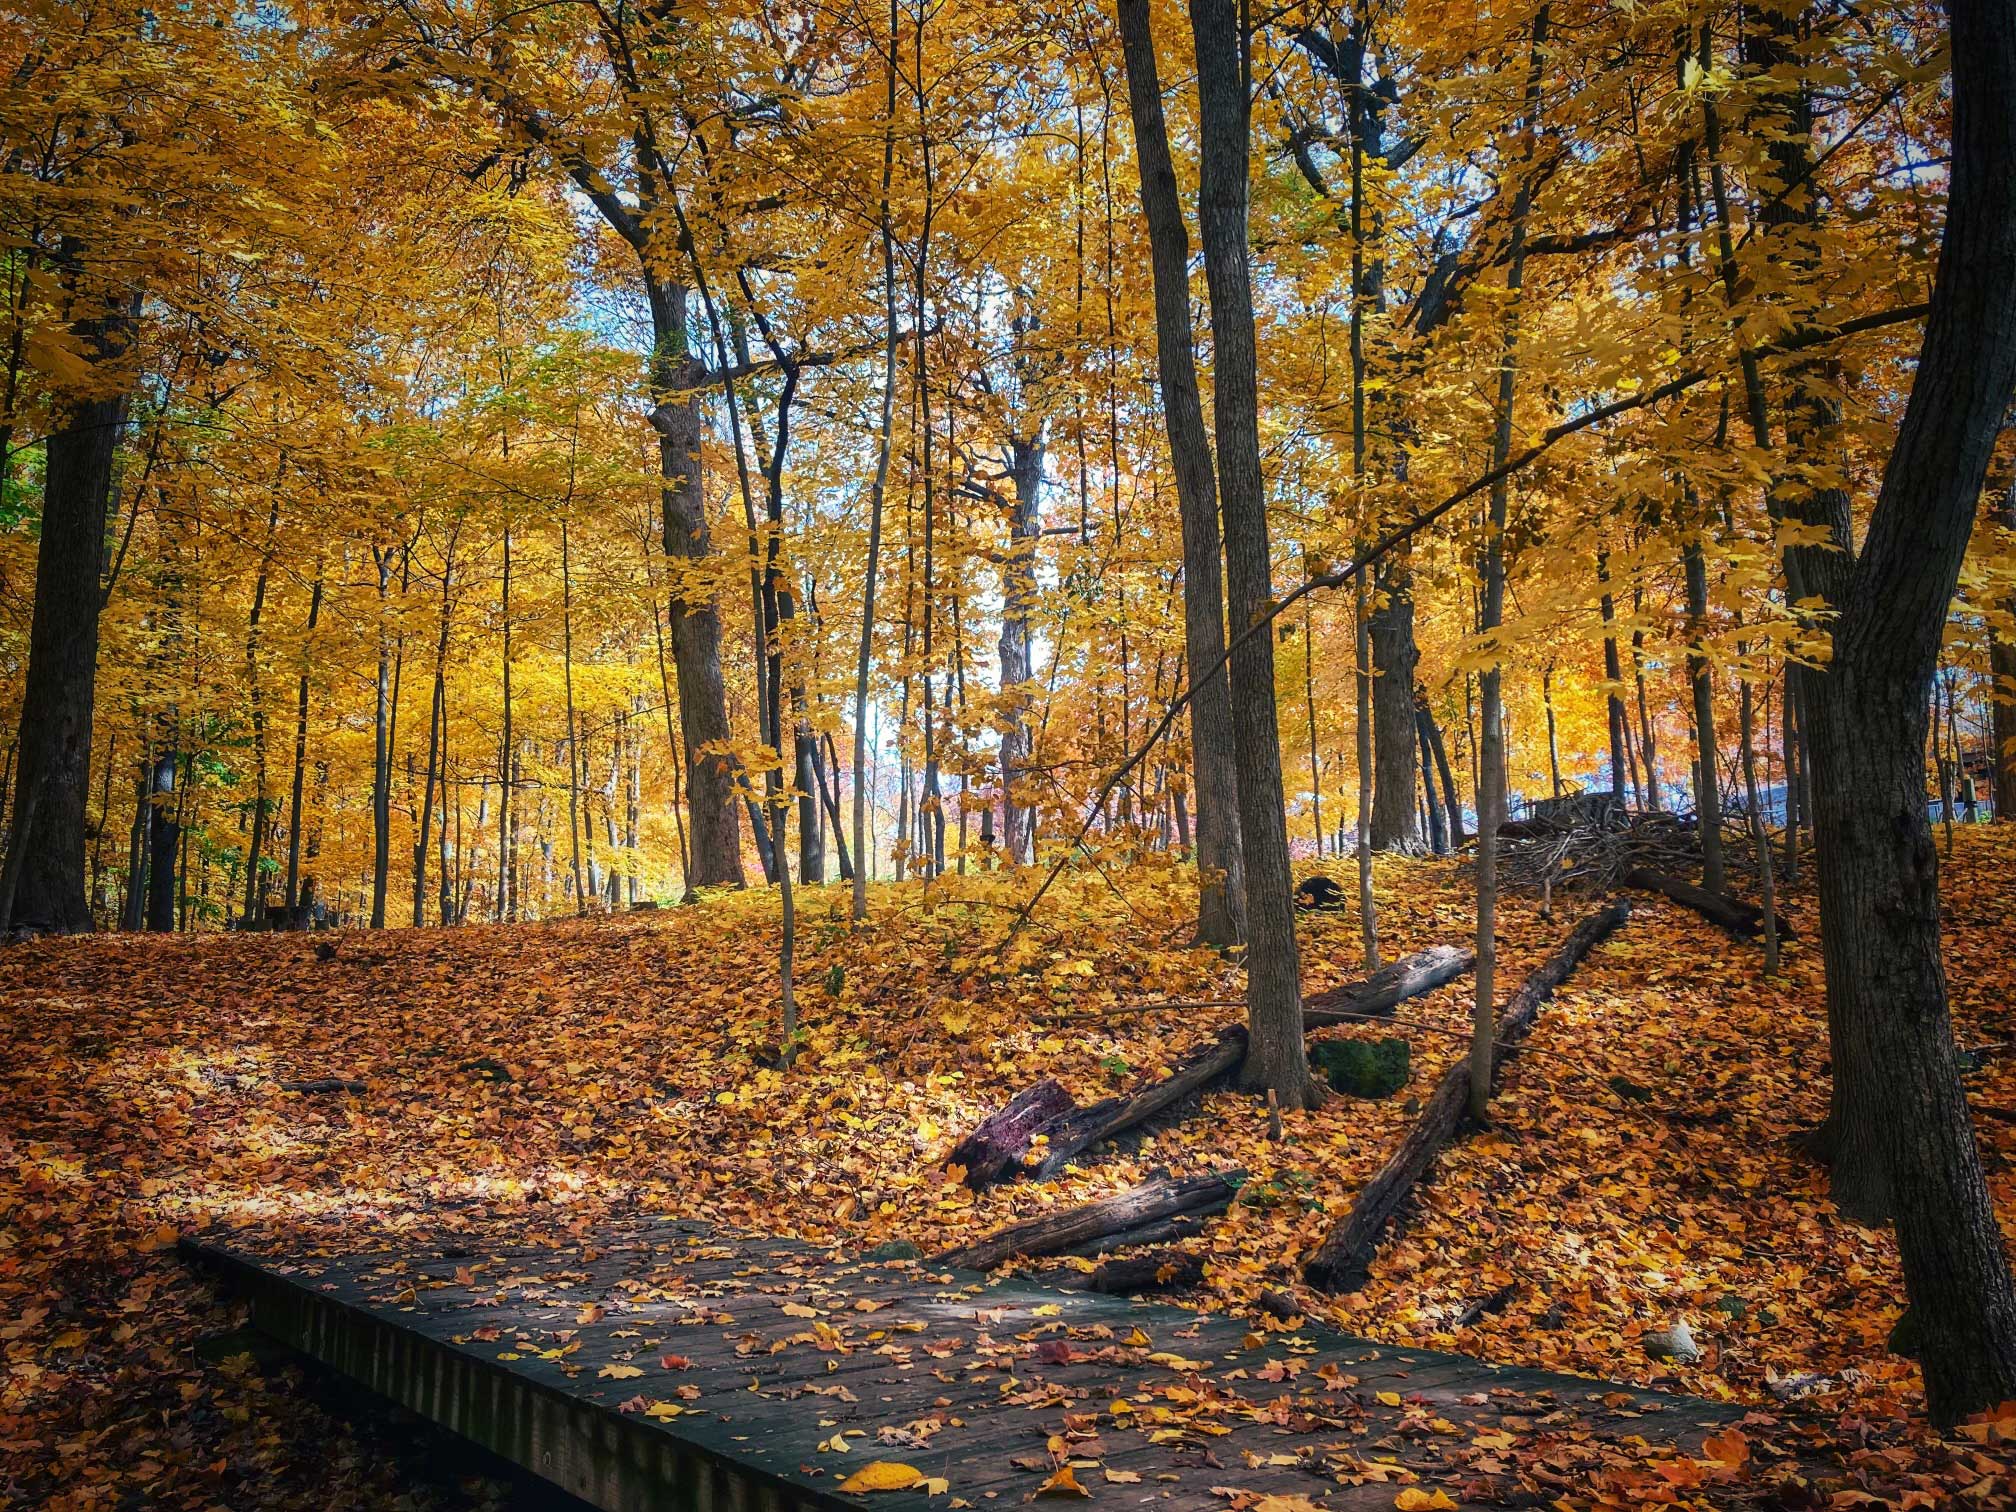 Fall scenery at Hidden Oaks